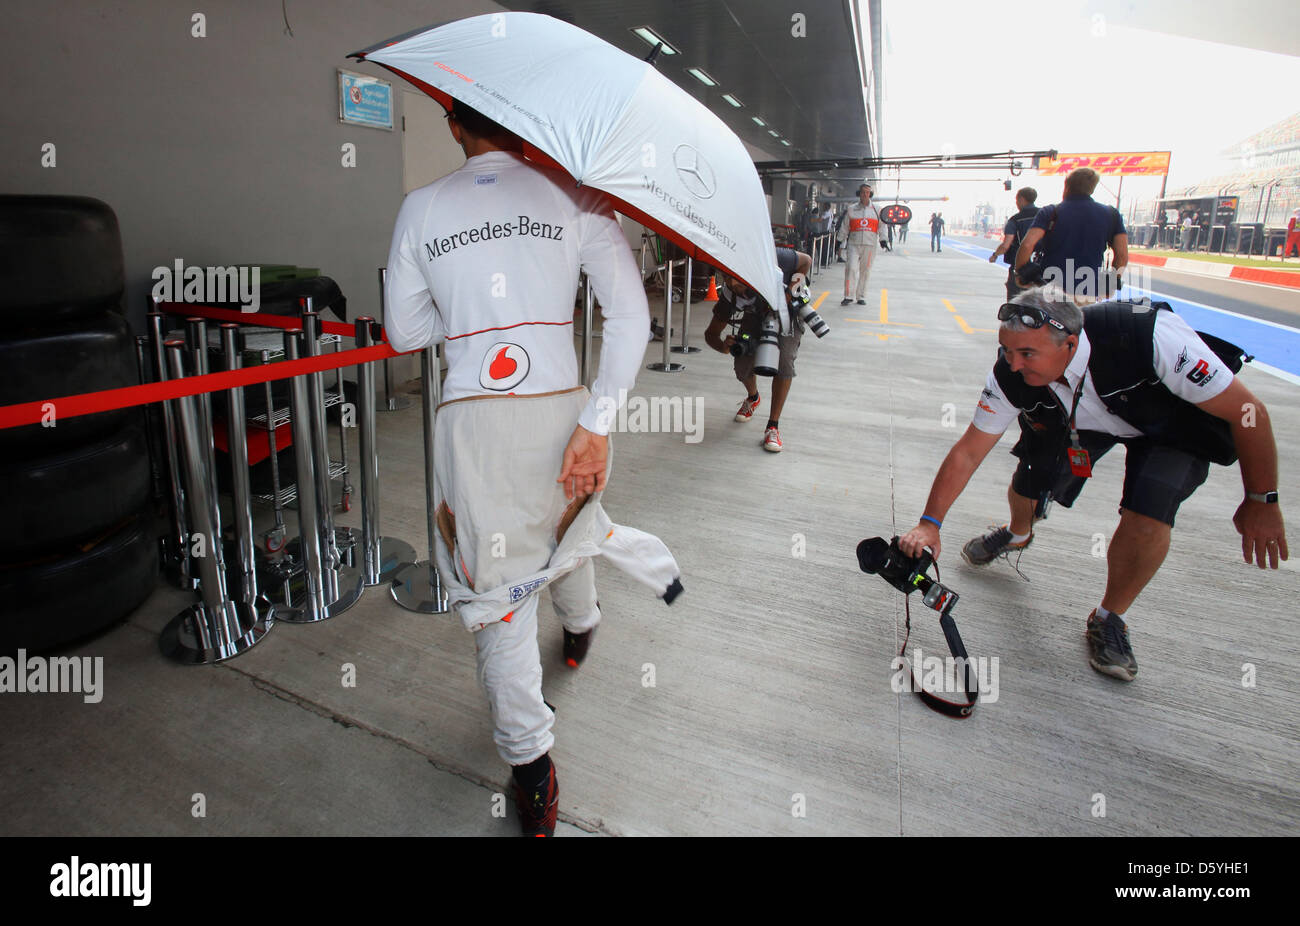 Britische Formel1-Fahrer Lewis Hamilton von McLaren Mercedes geht unter  einem Regenschirm durch die Boxengasse während das erste Training auf der  Rennstrecke Buddh International Circuit, Greater Noida, Indien, 26. Oktober  2012. Die Formel